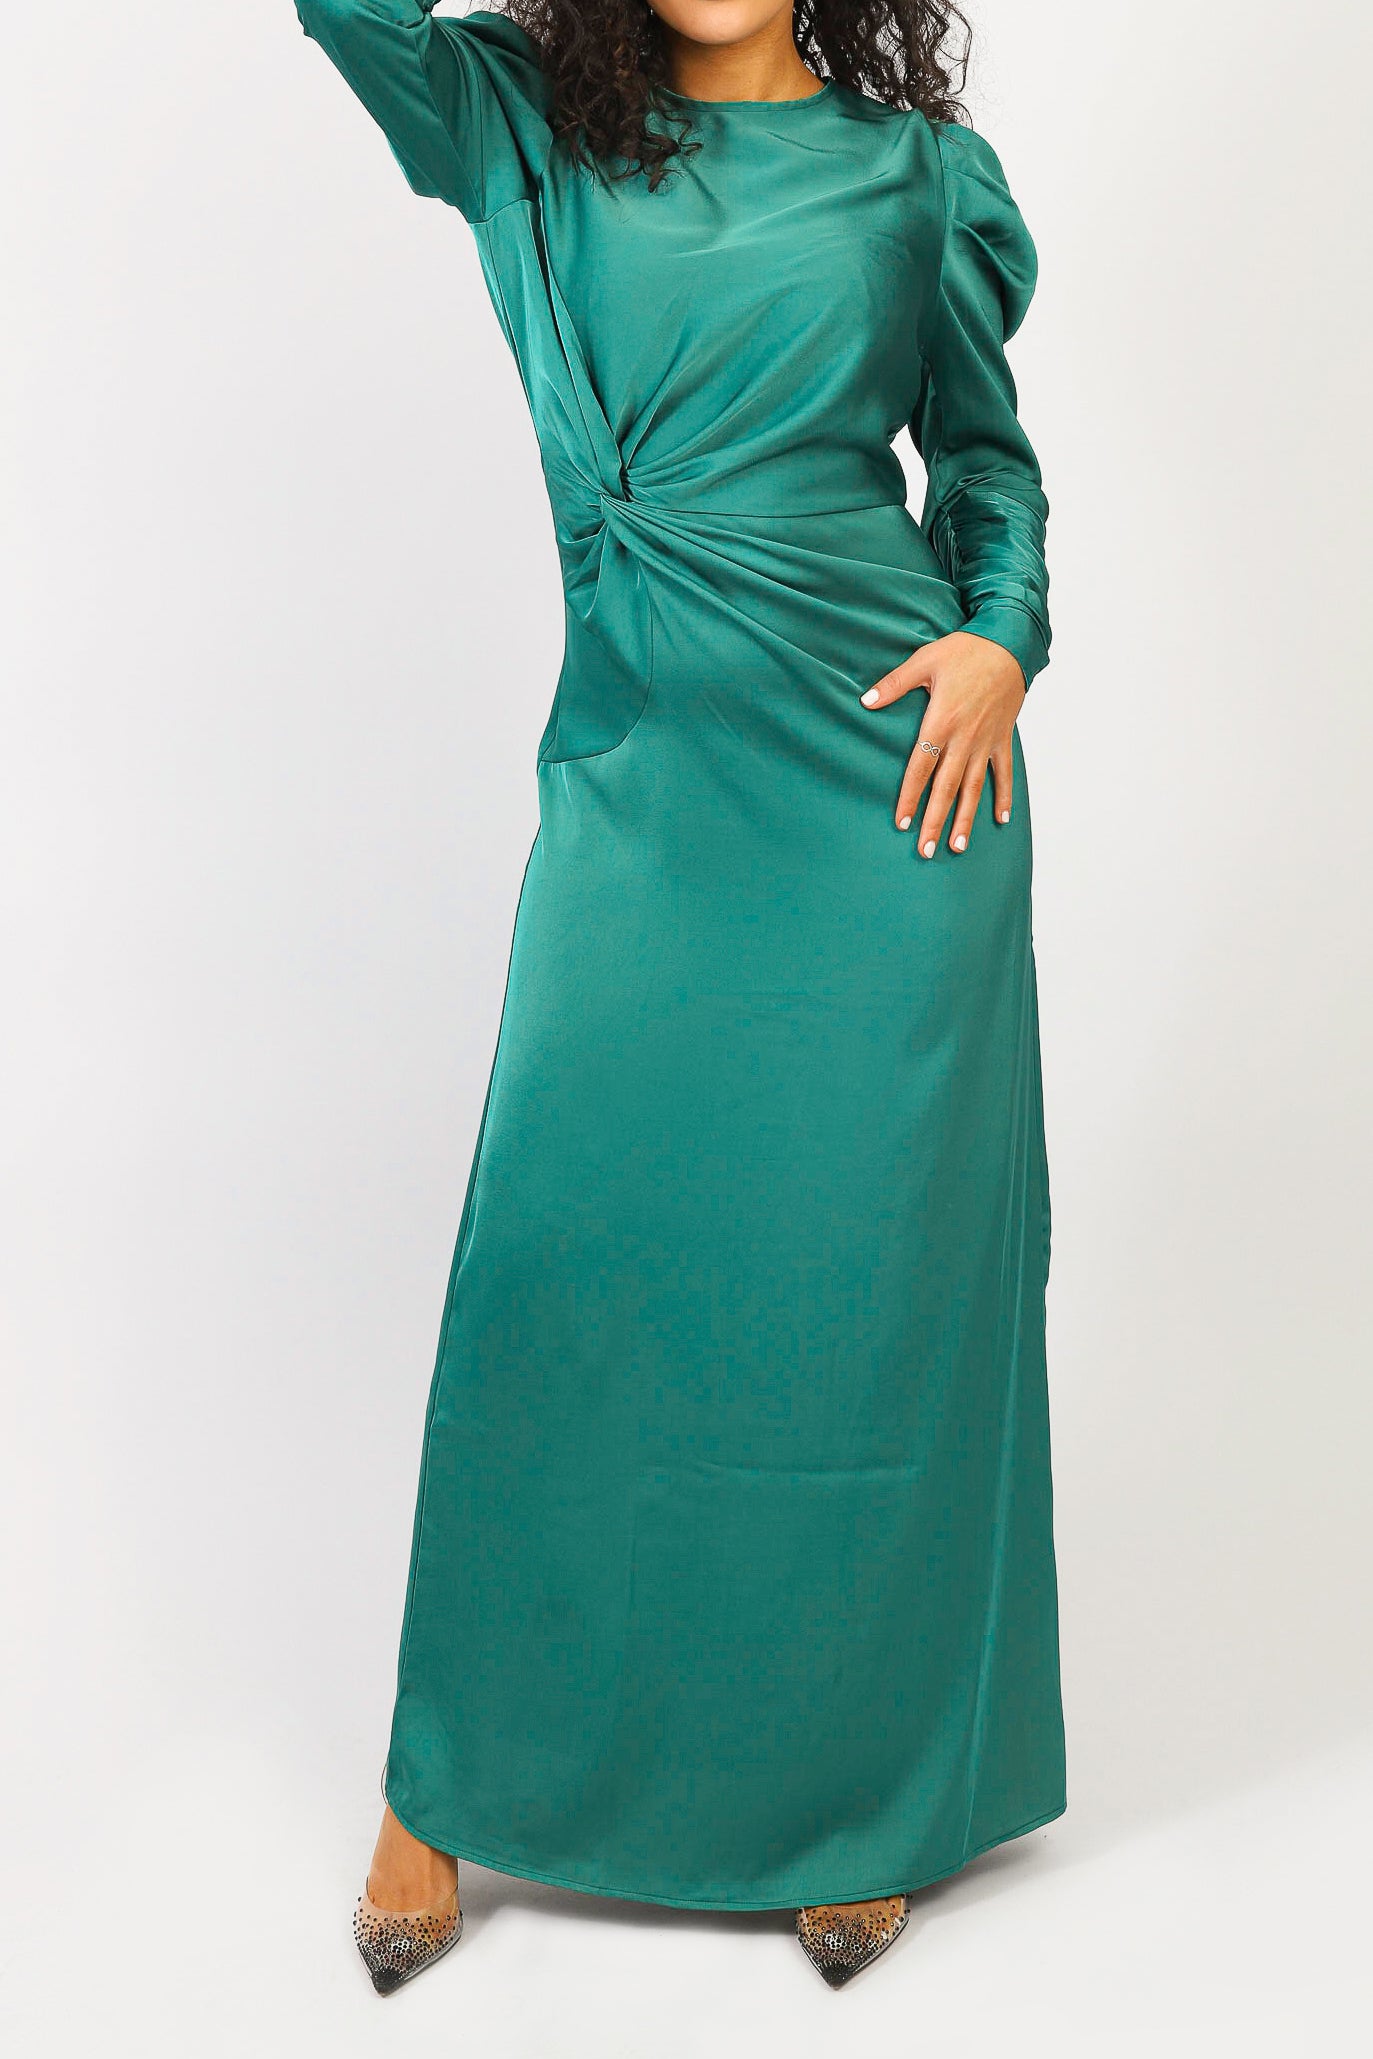 M7899Jade-dress-abaya